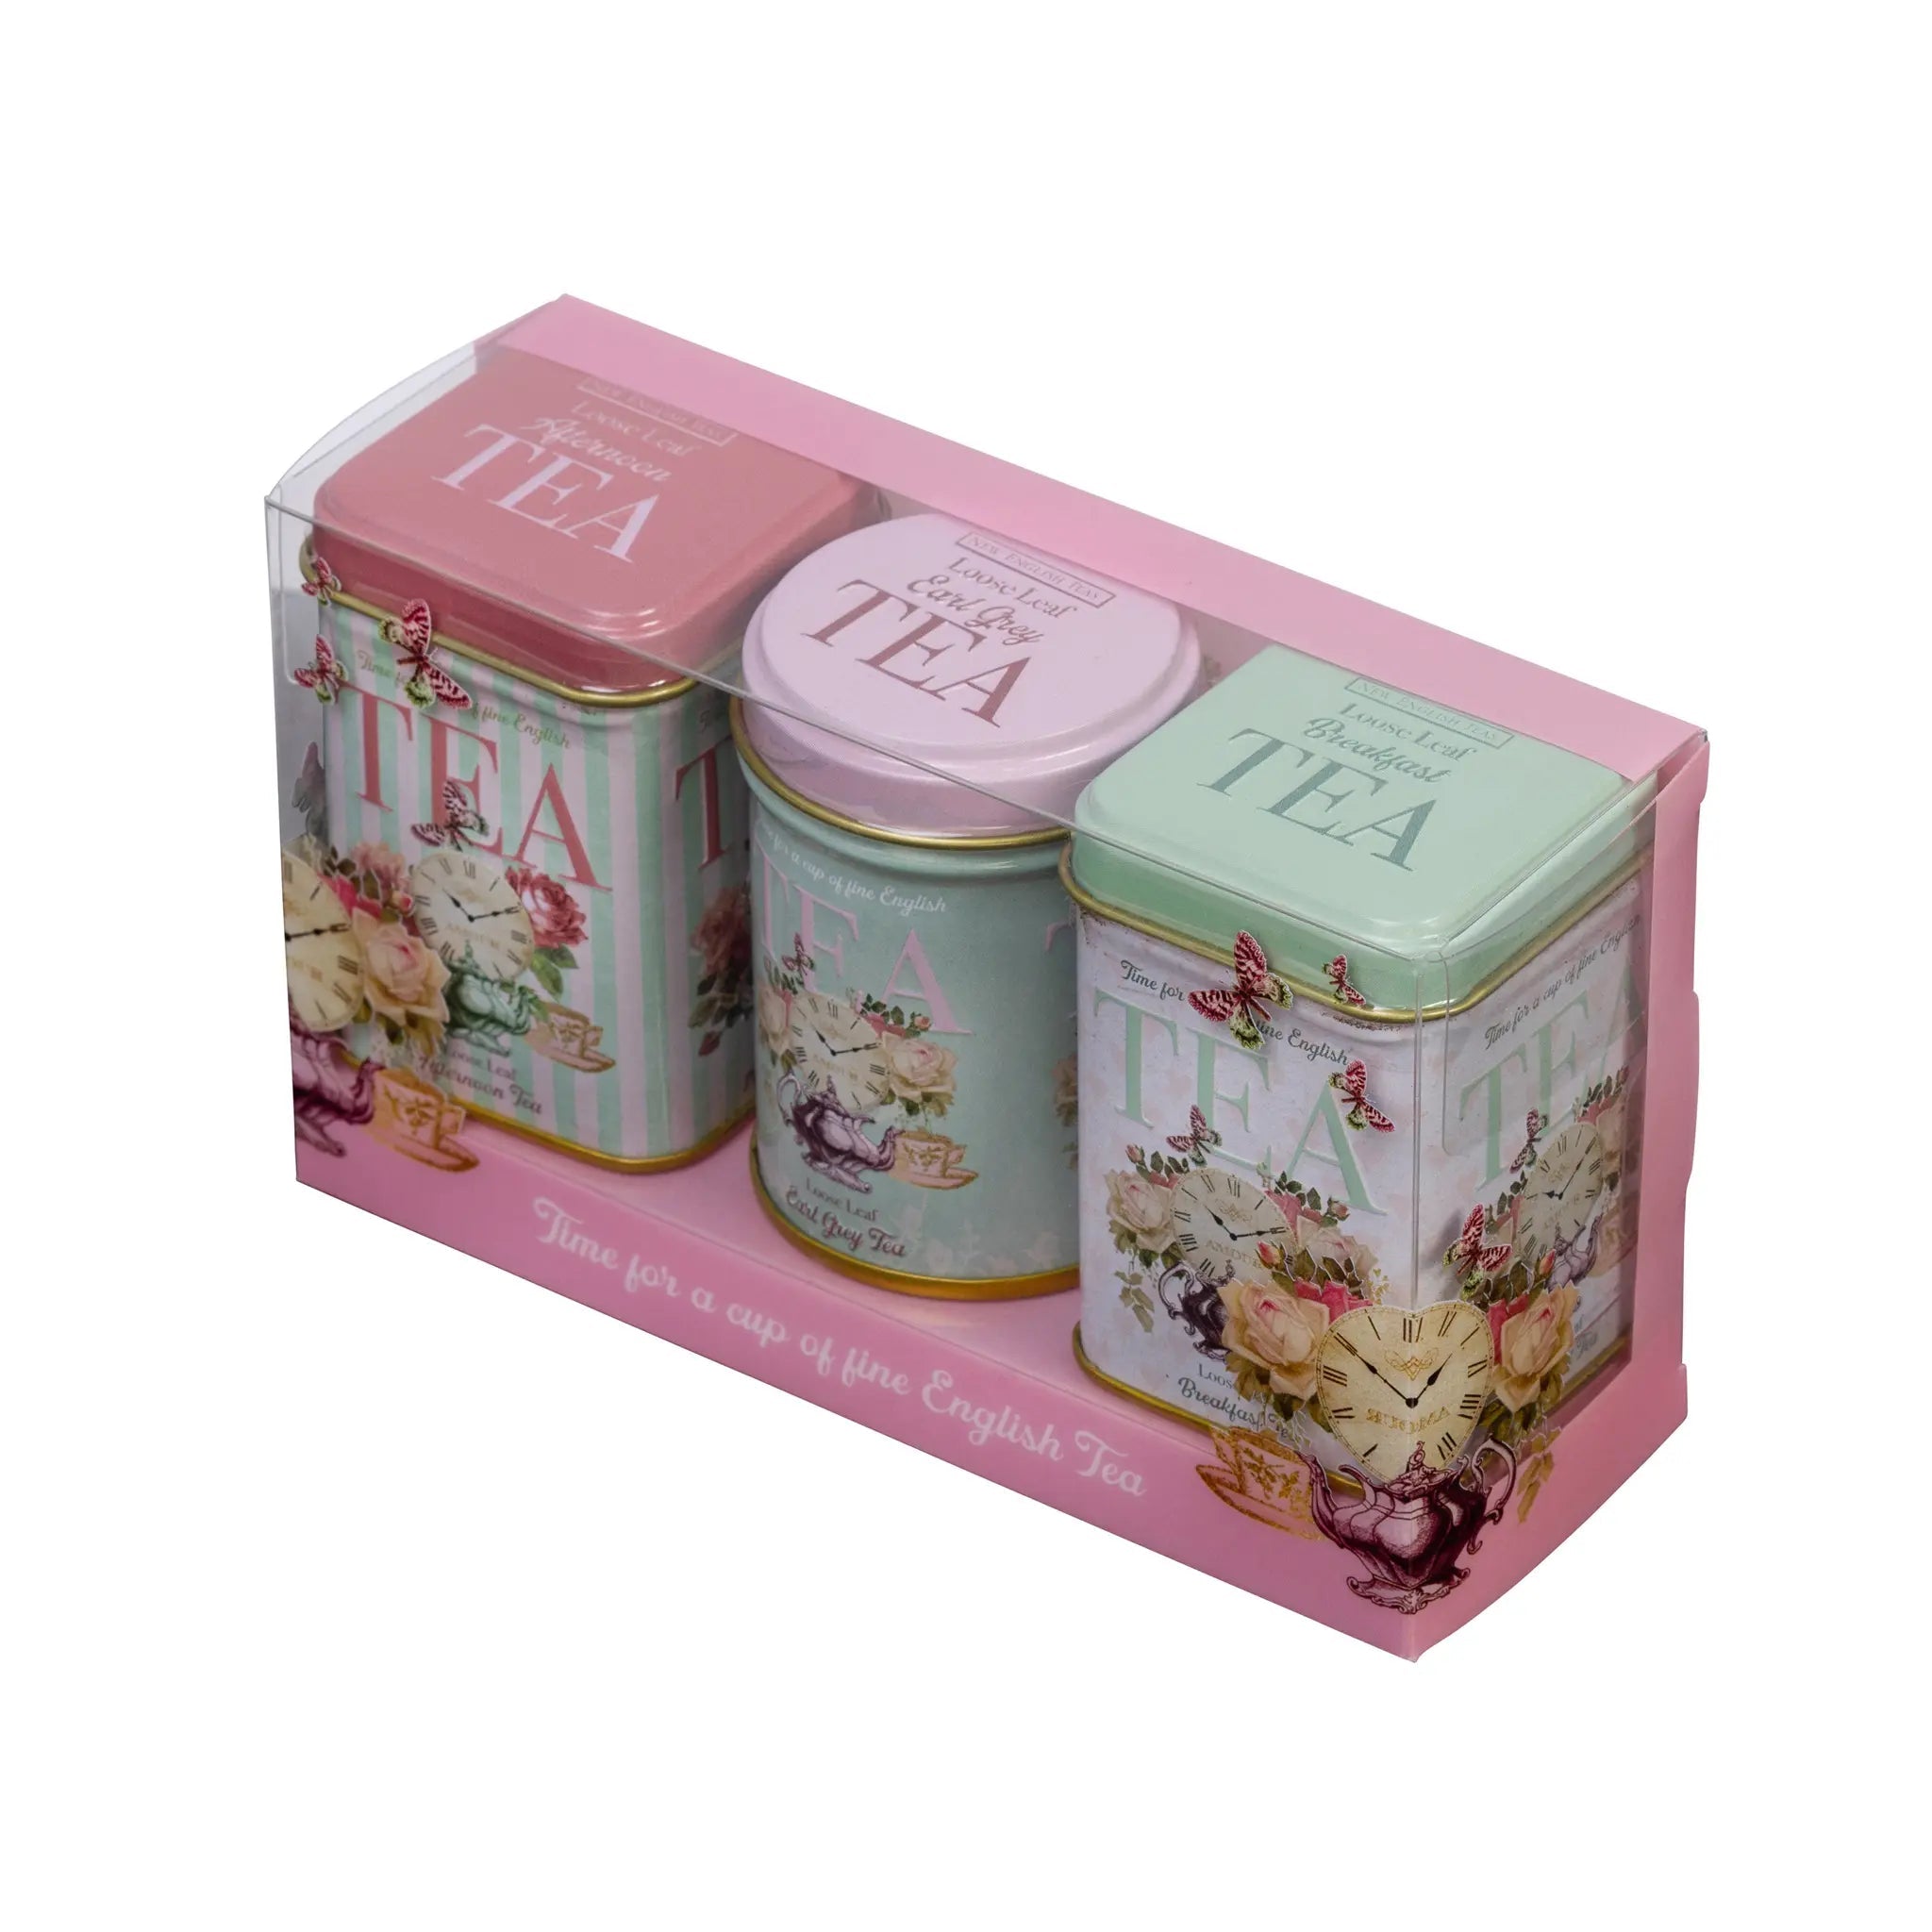 Time For Tea Mini Tea Tin Gift Set Tea Tins New English Teas 